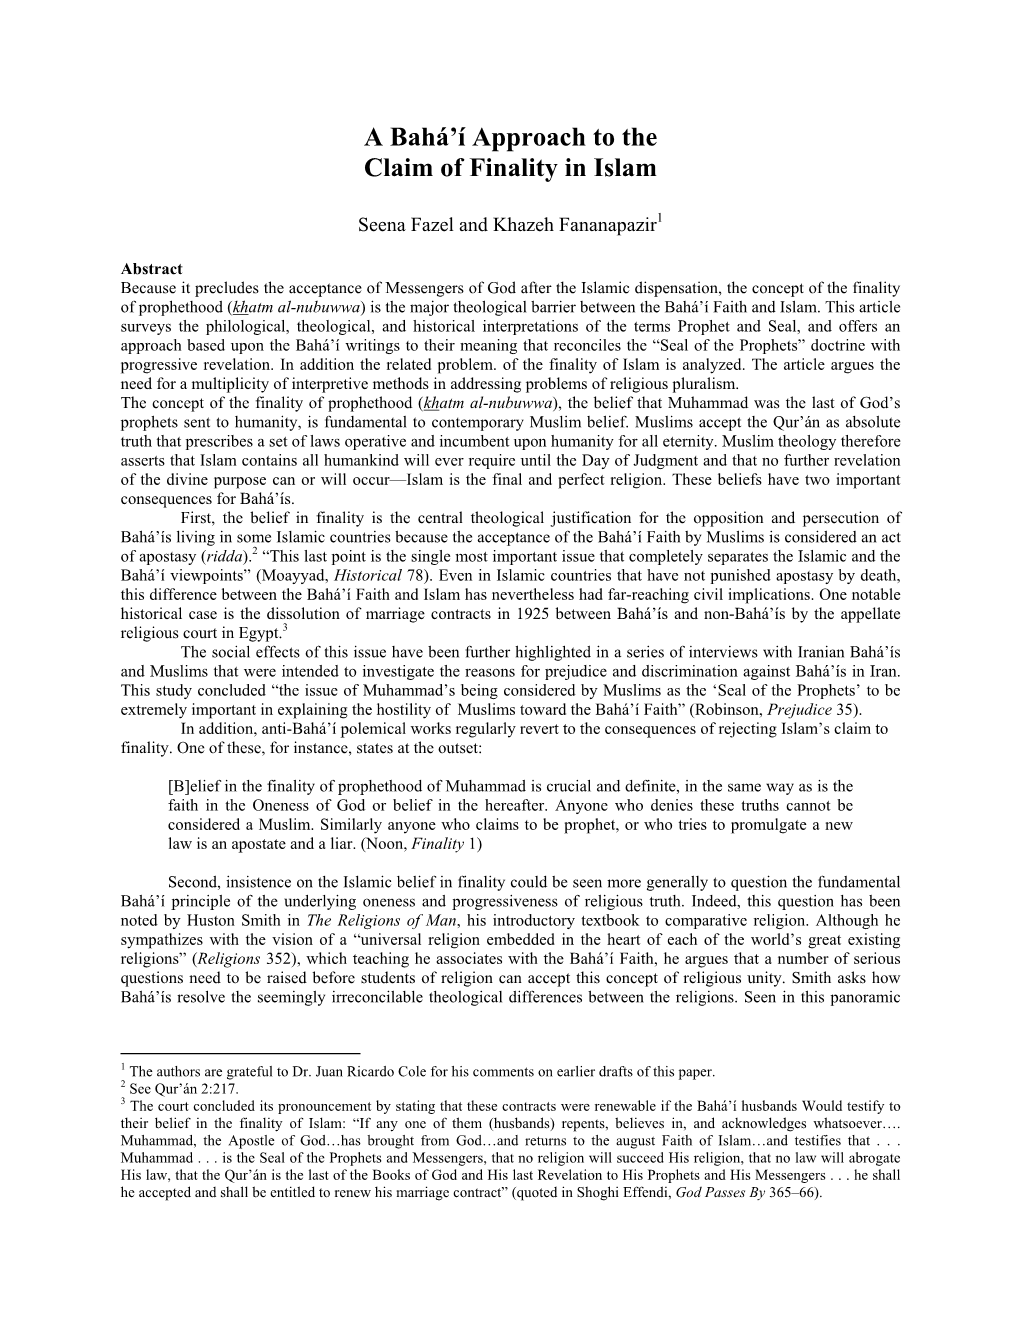 A Bahá'í Approach to the Claim of Finality in Islam